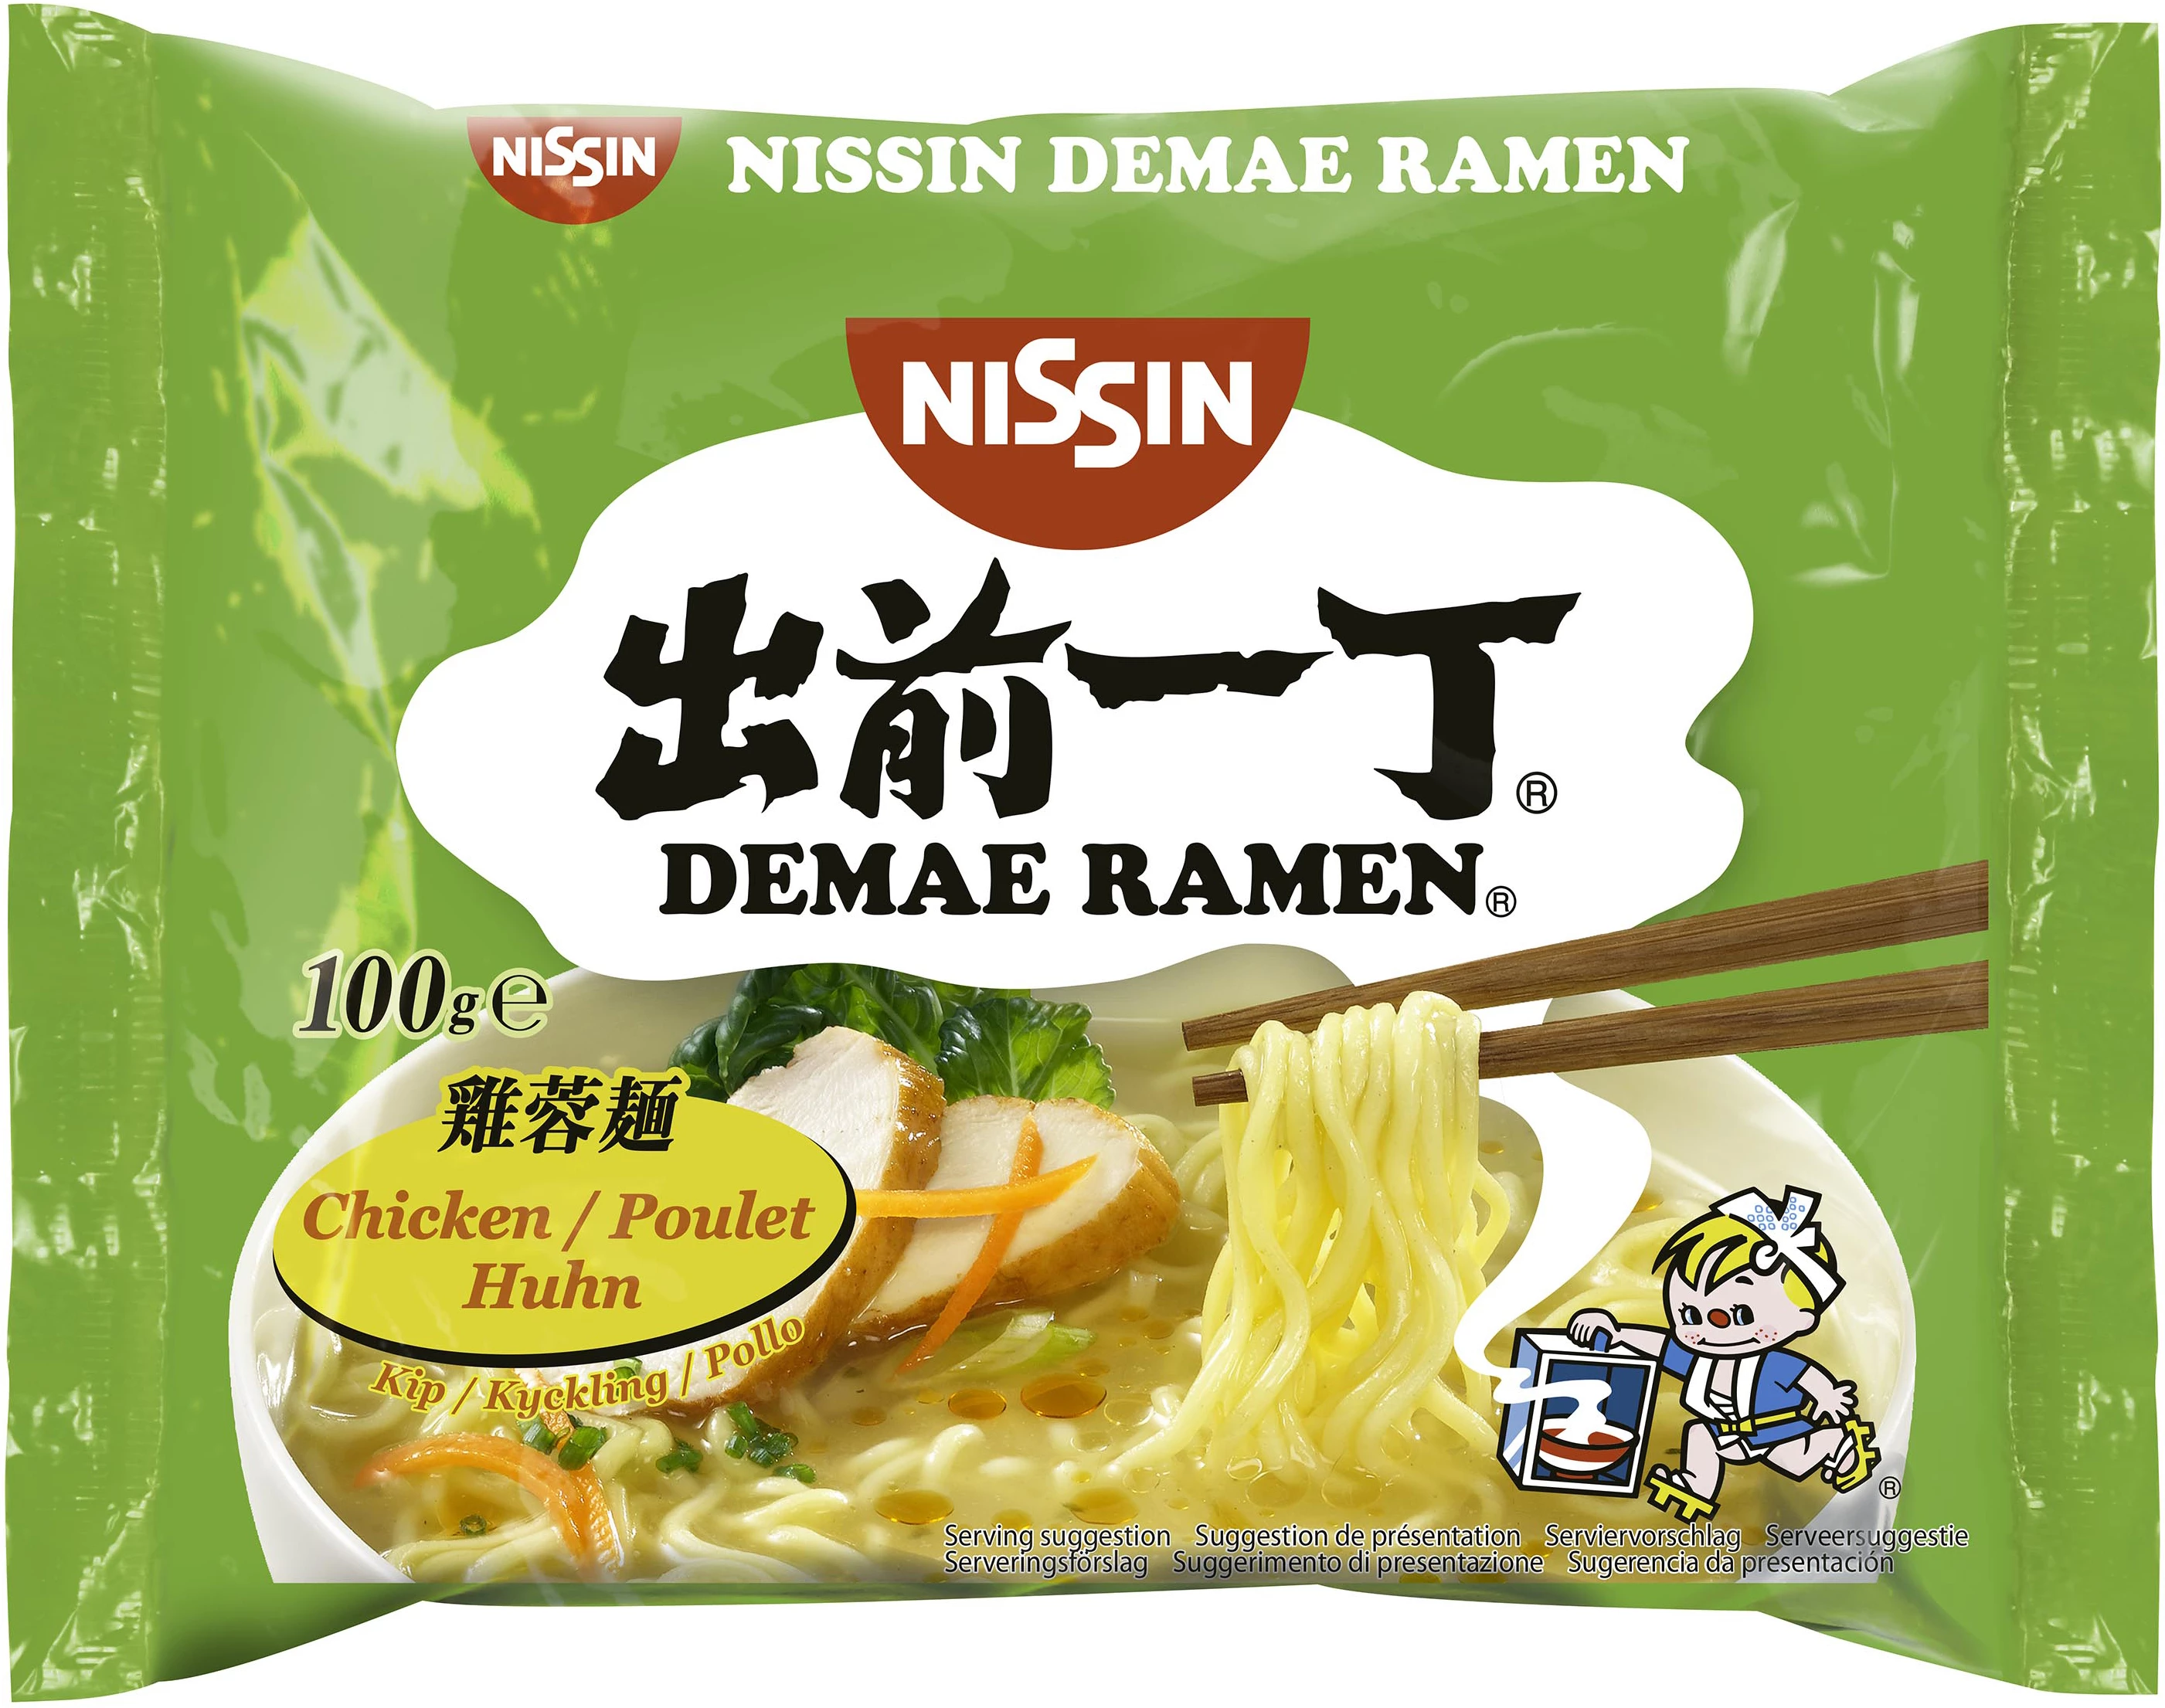 Instant noodles with chicken 100gr demae ramen - NISSIN